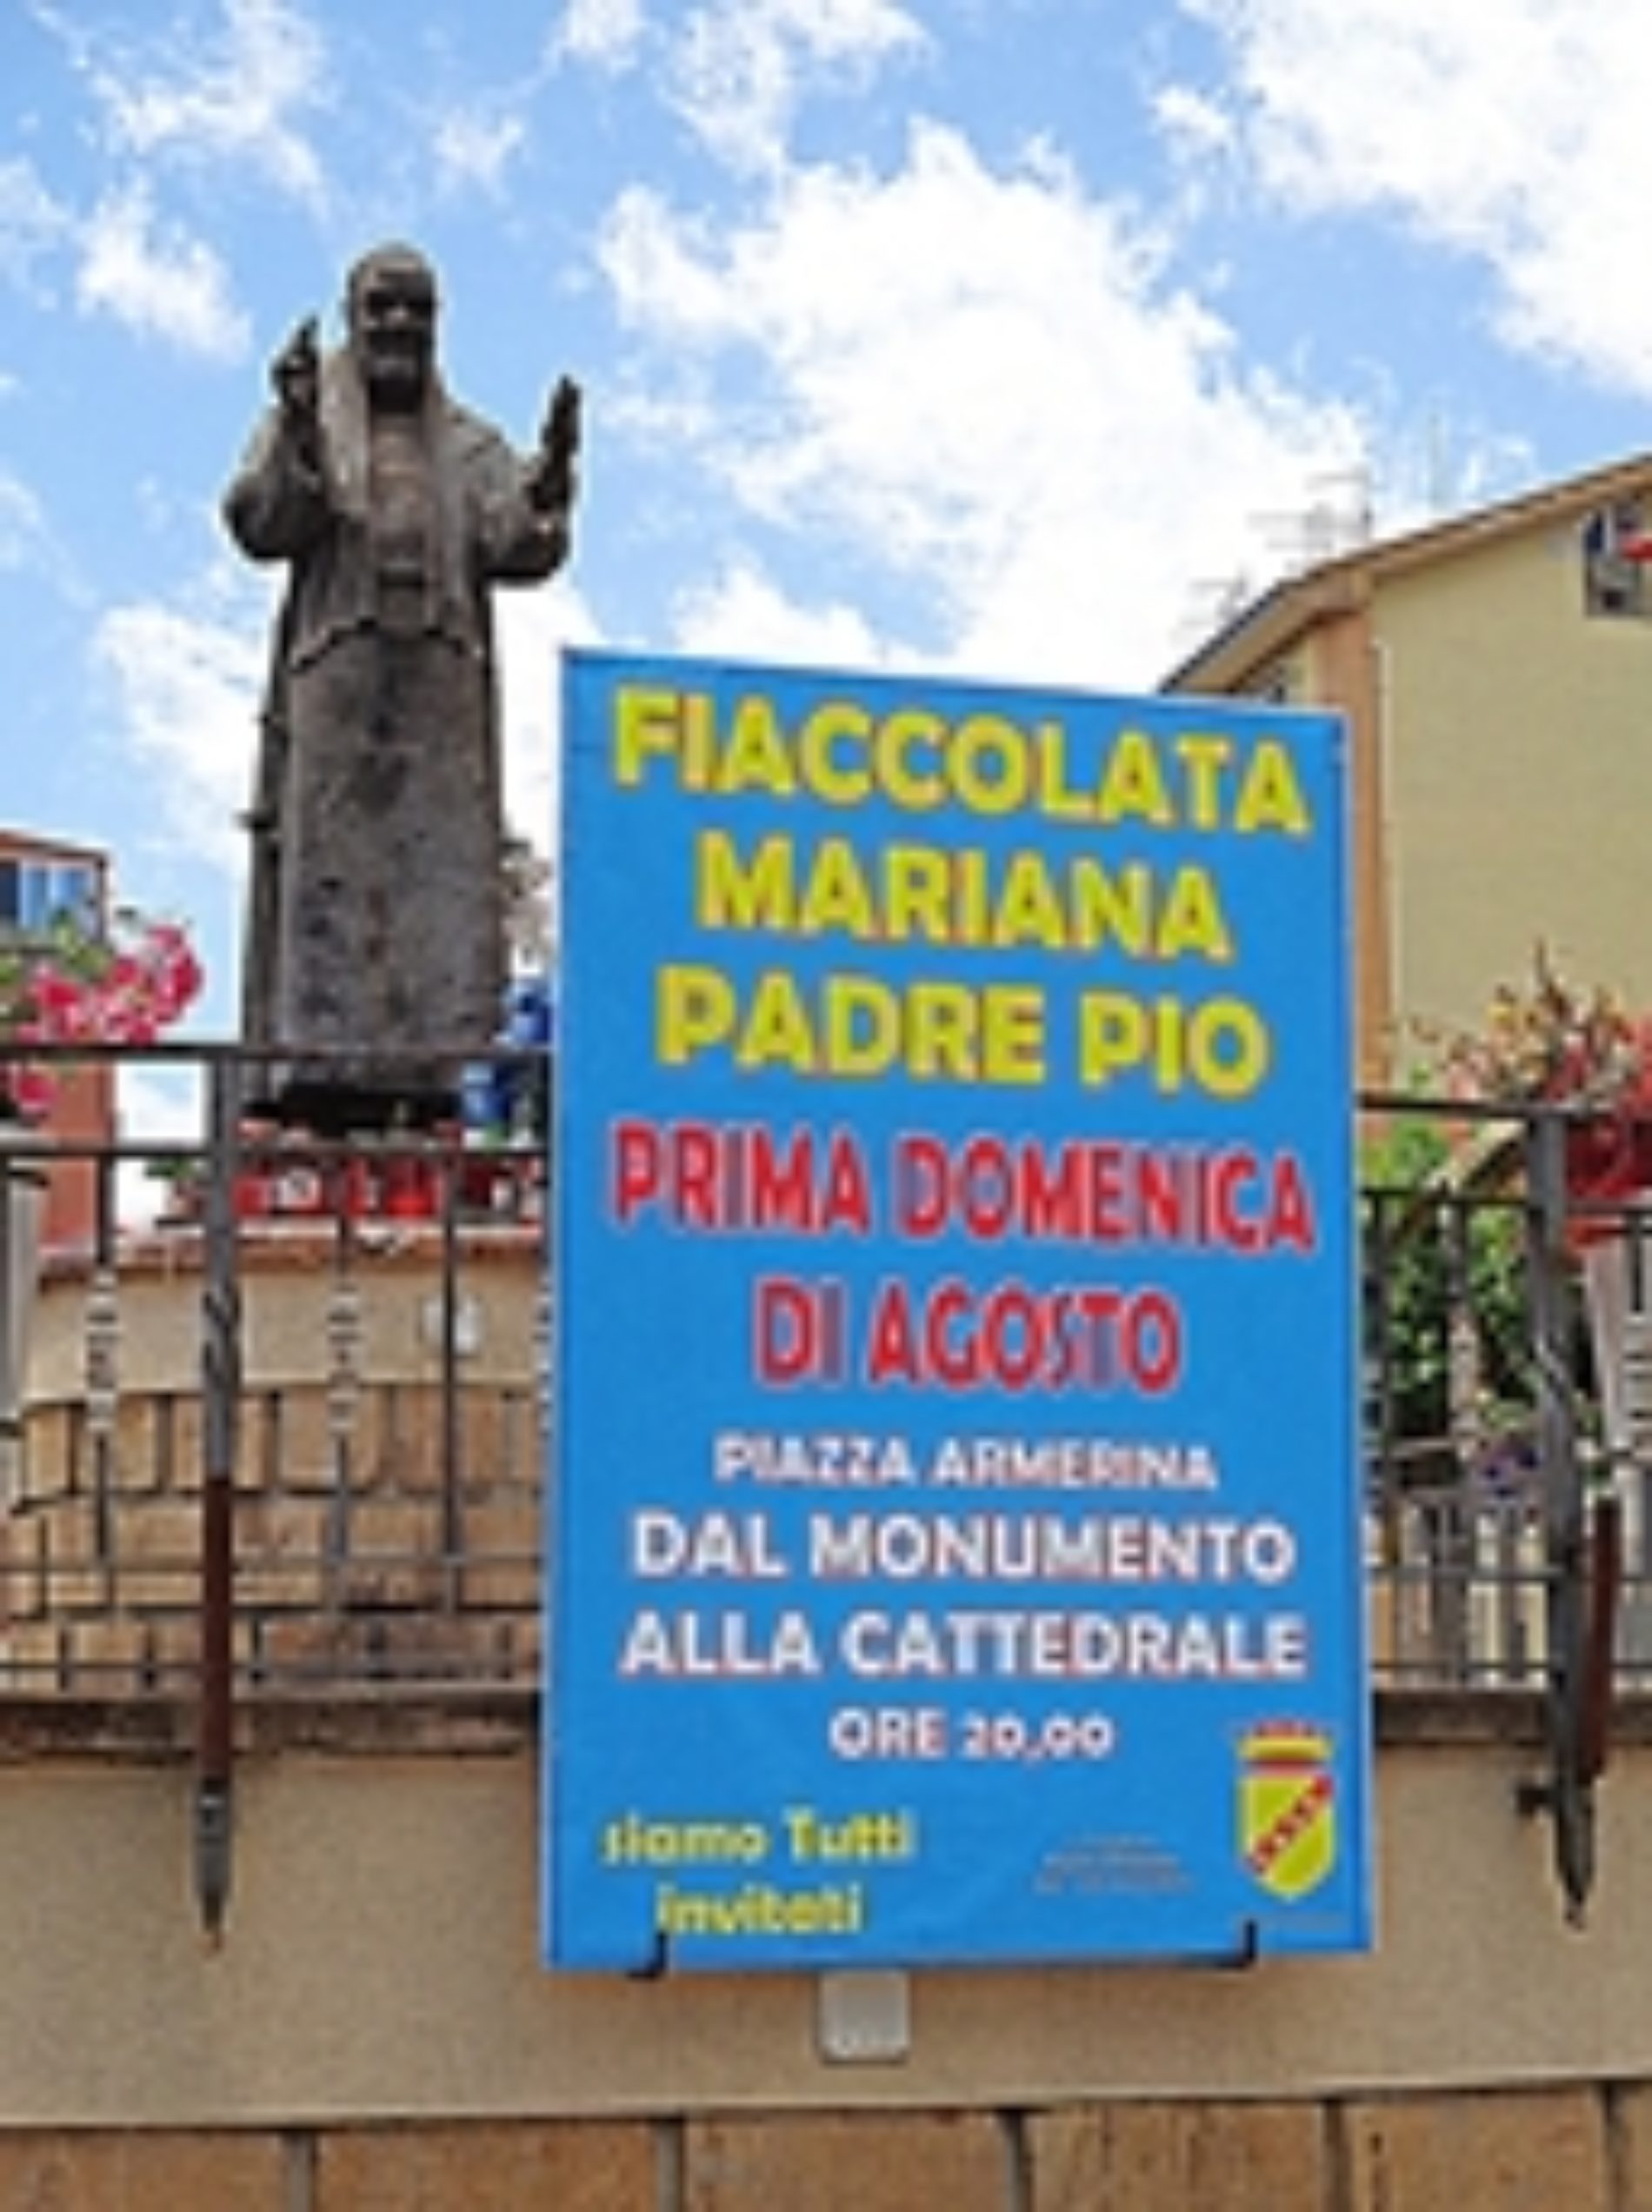 Fiaccolata Mariana di Padre Pio nella città dei mosaici per la prima domenica di agosto